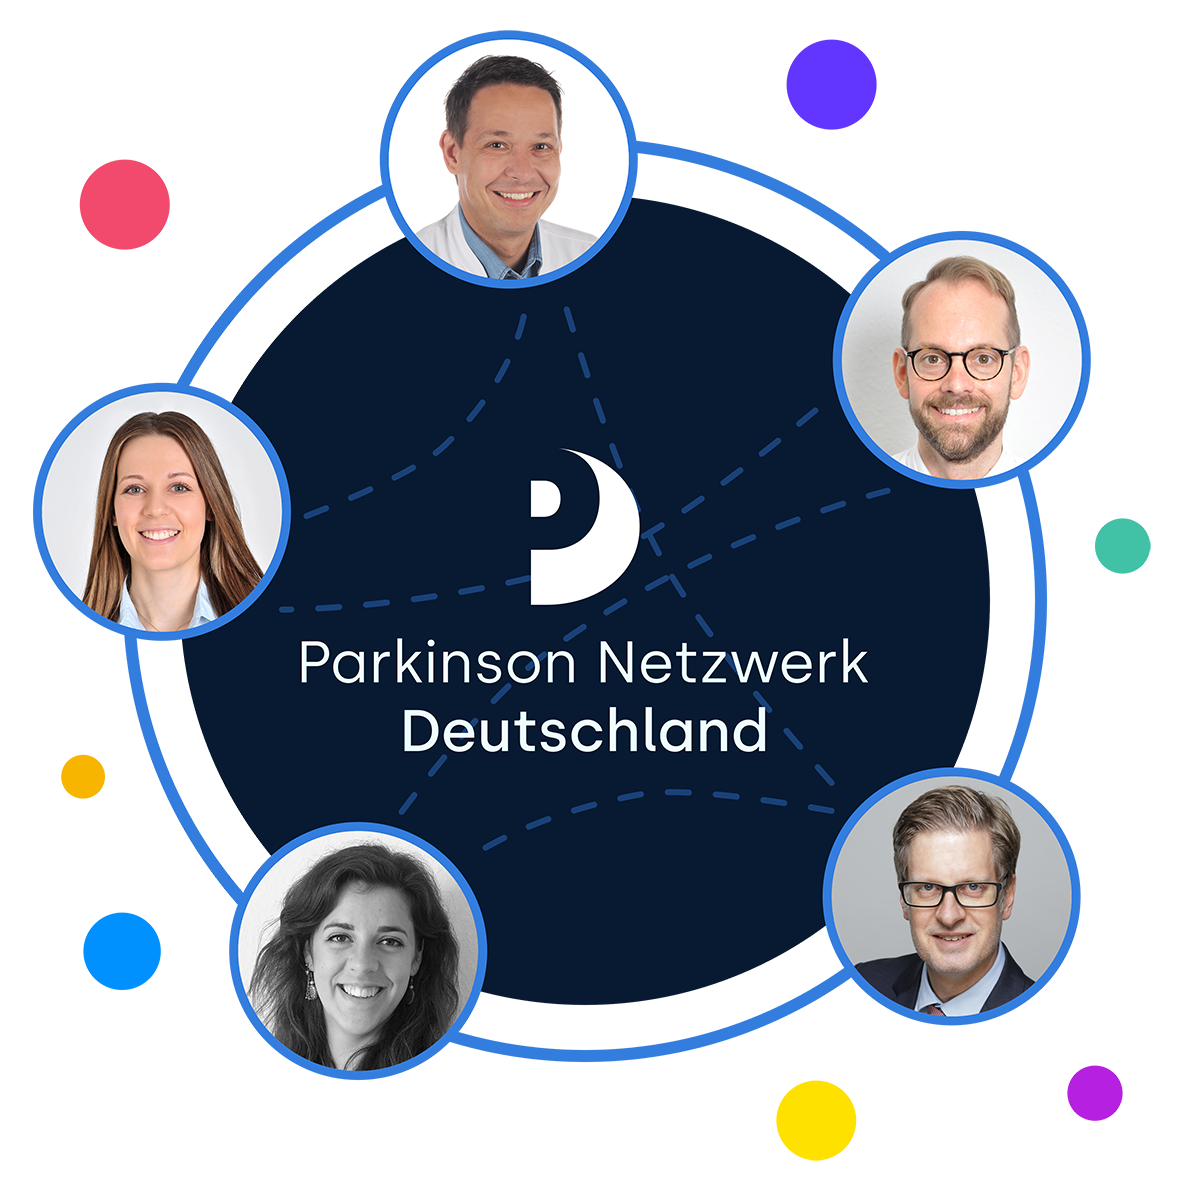 Hilde-Ulrichs-Stiftung fördert Projekt zu Parkinson-Netzwerken